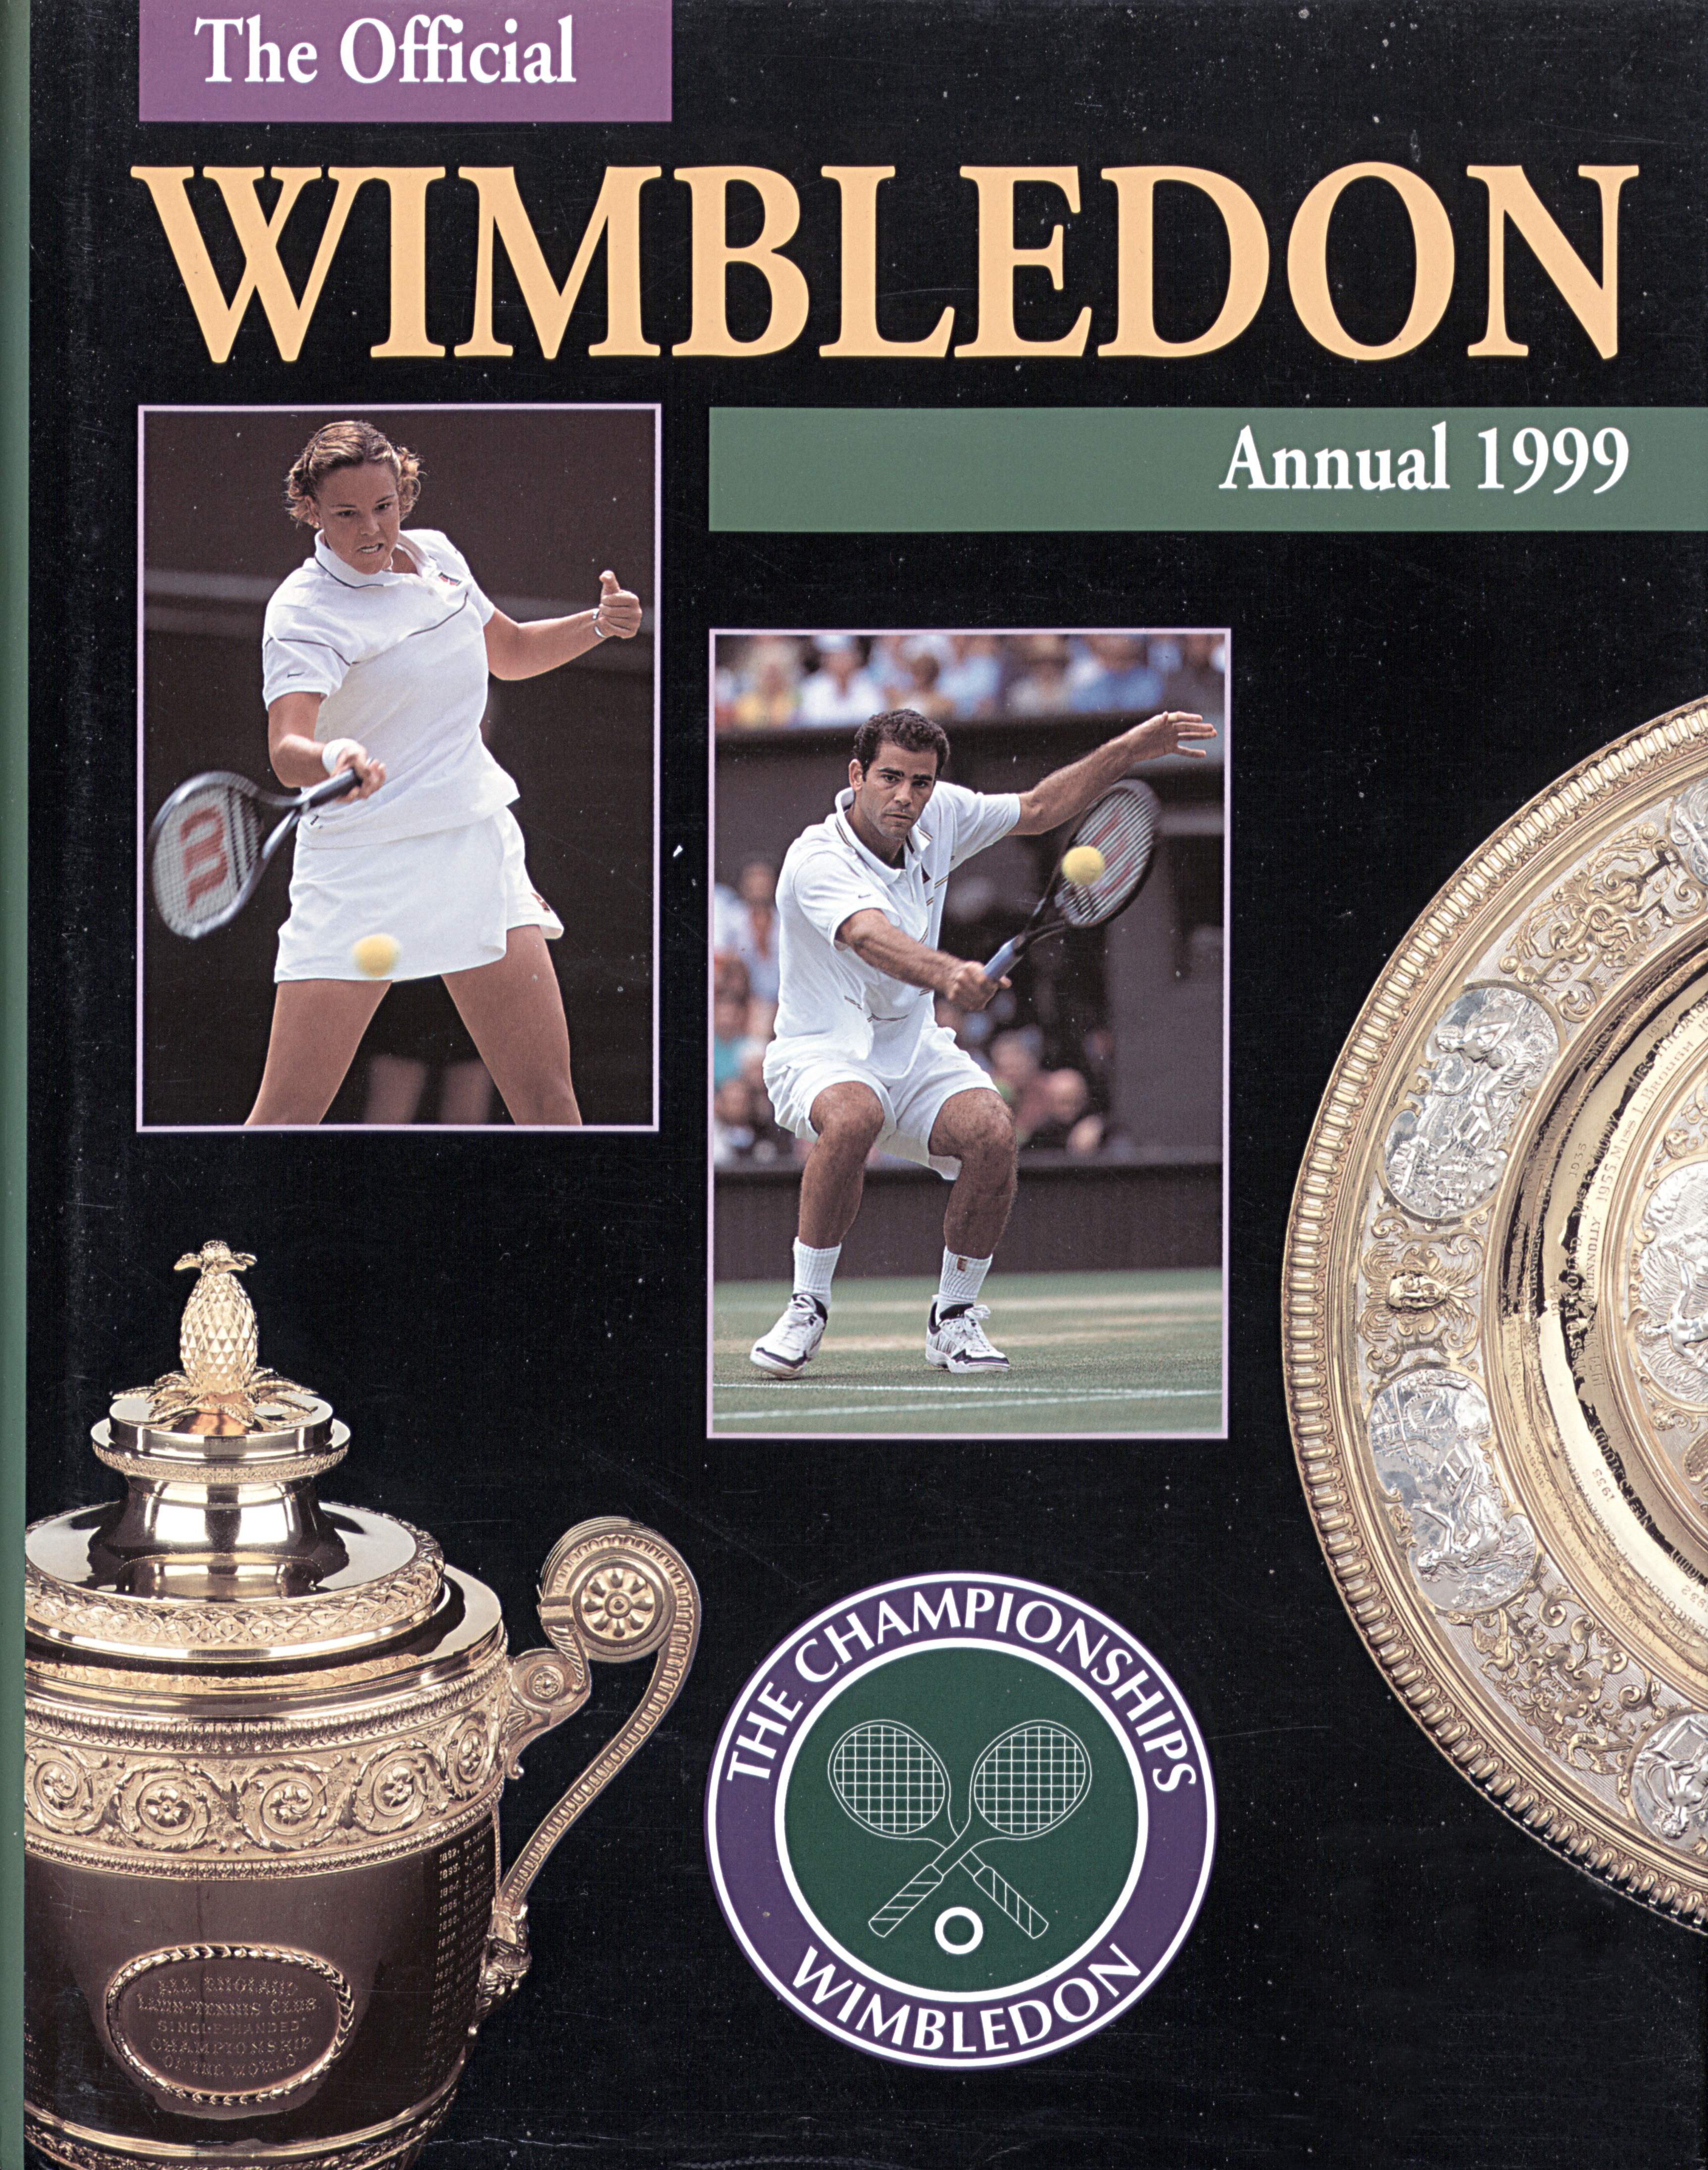 The Championships Wimbledon 1999